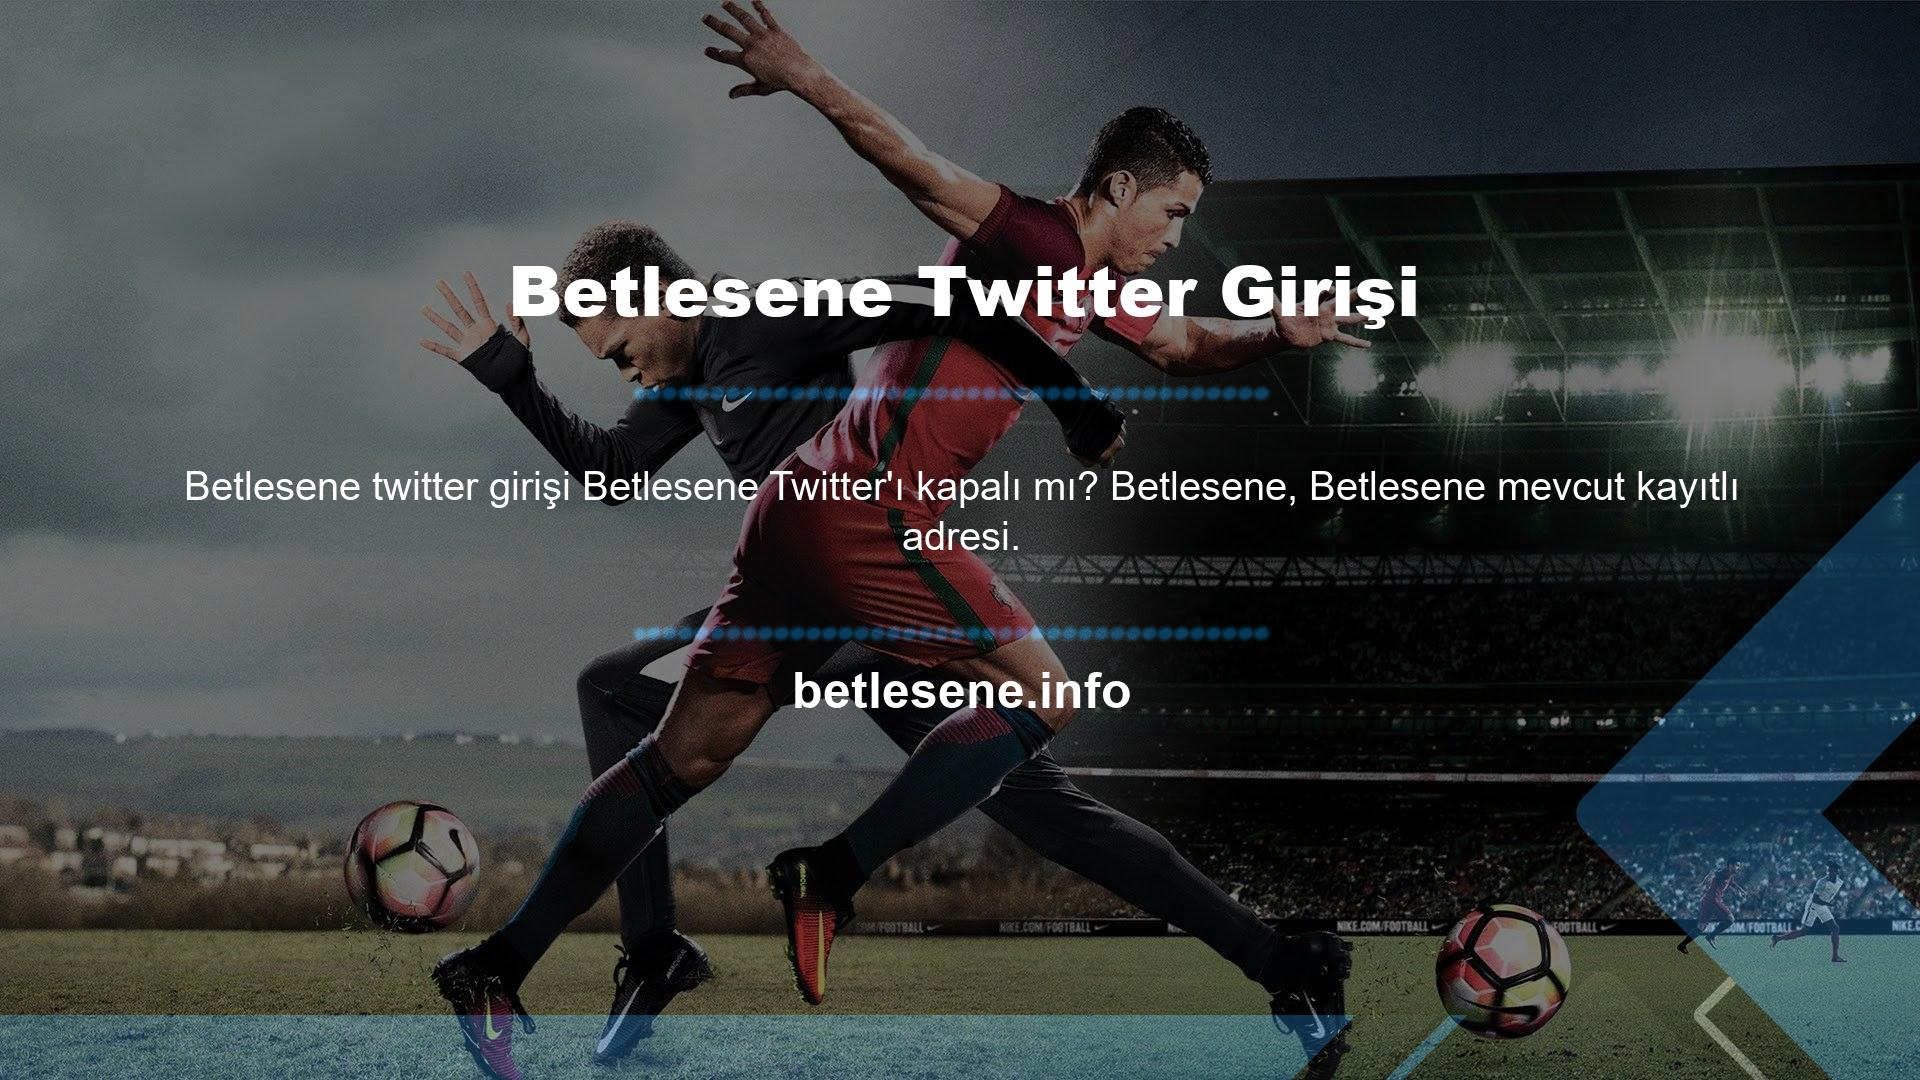 Betlesene Twitter'ı, sitelerinde lisans verilerini güvenli bir şekilde paylaşan birkaç bahis sitesinden biridir